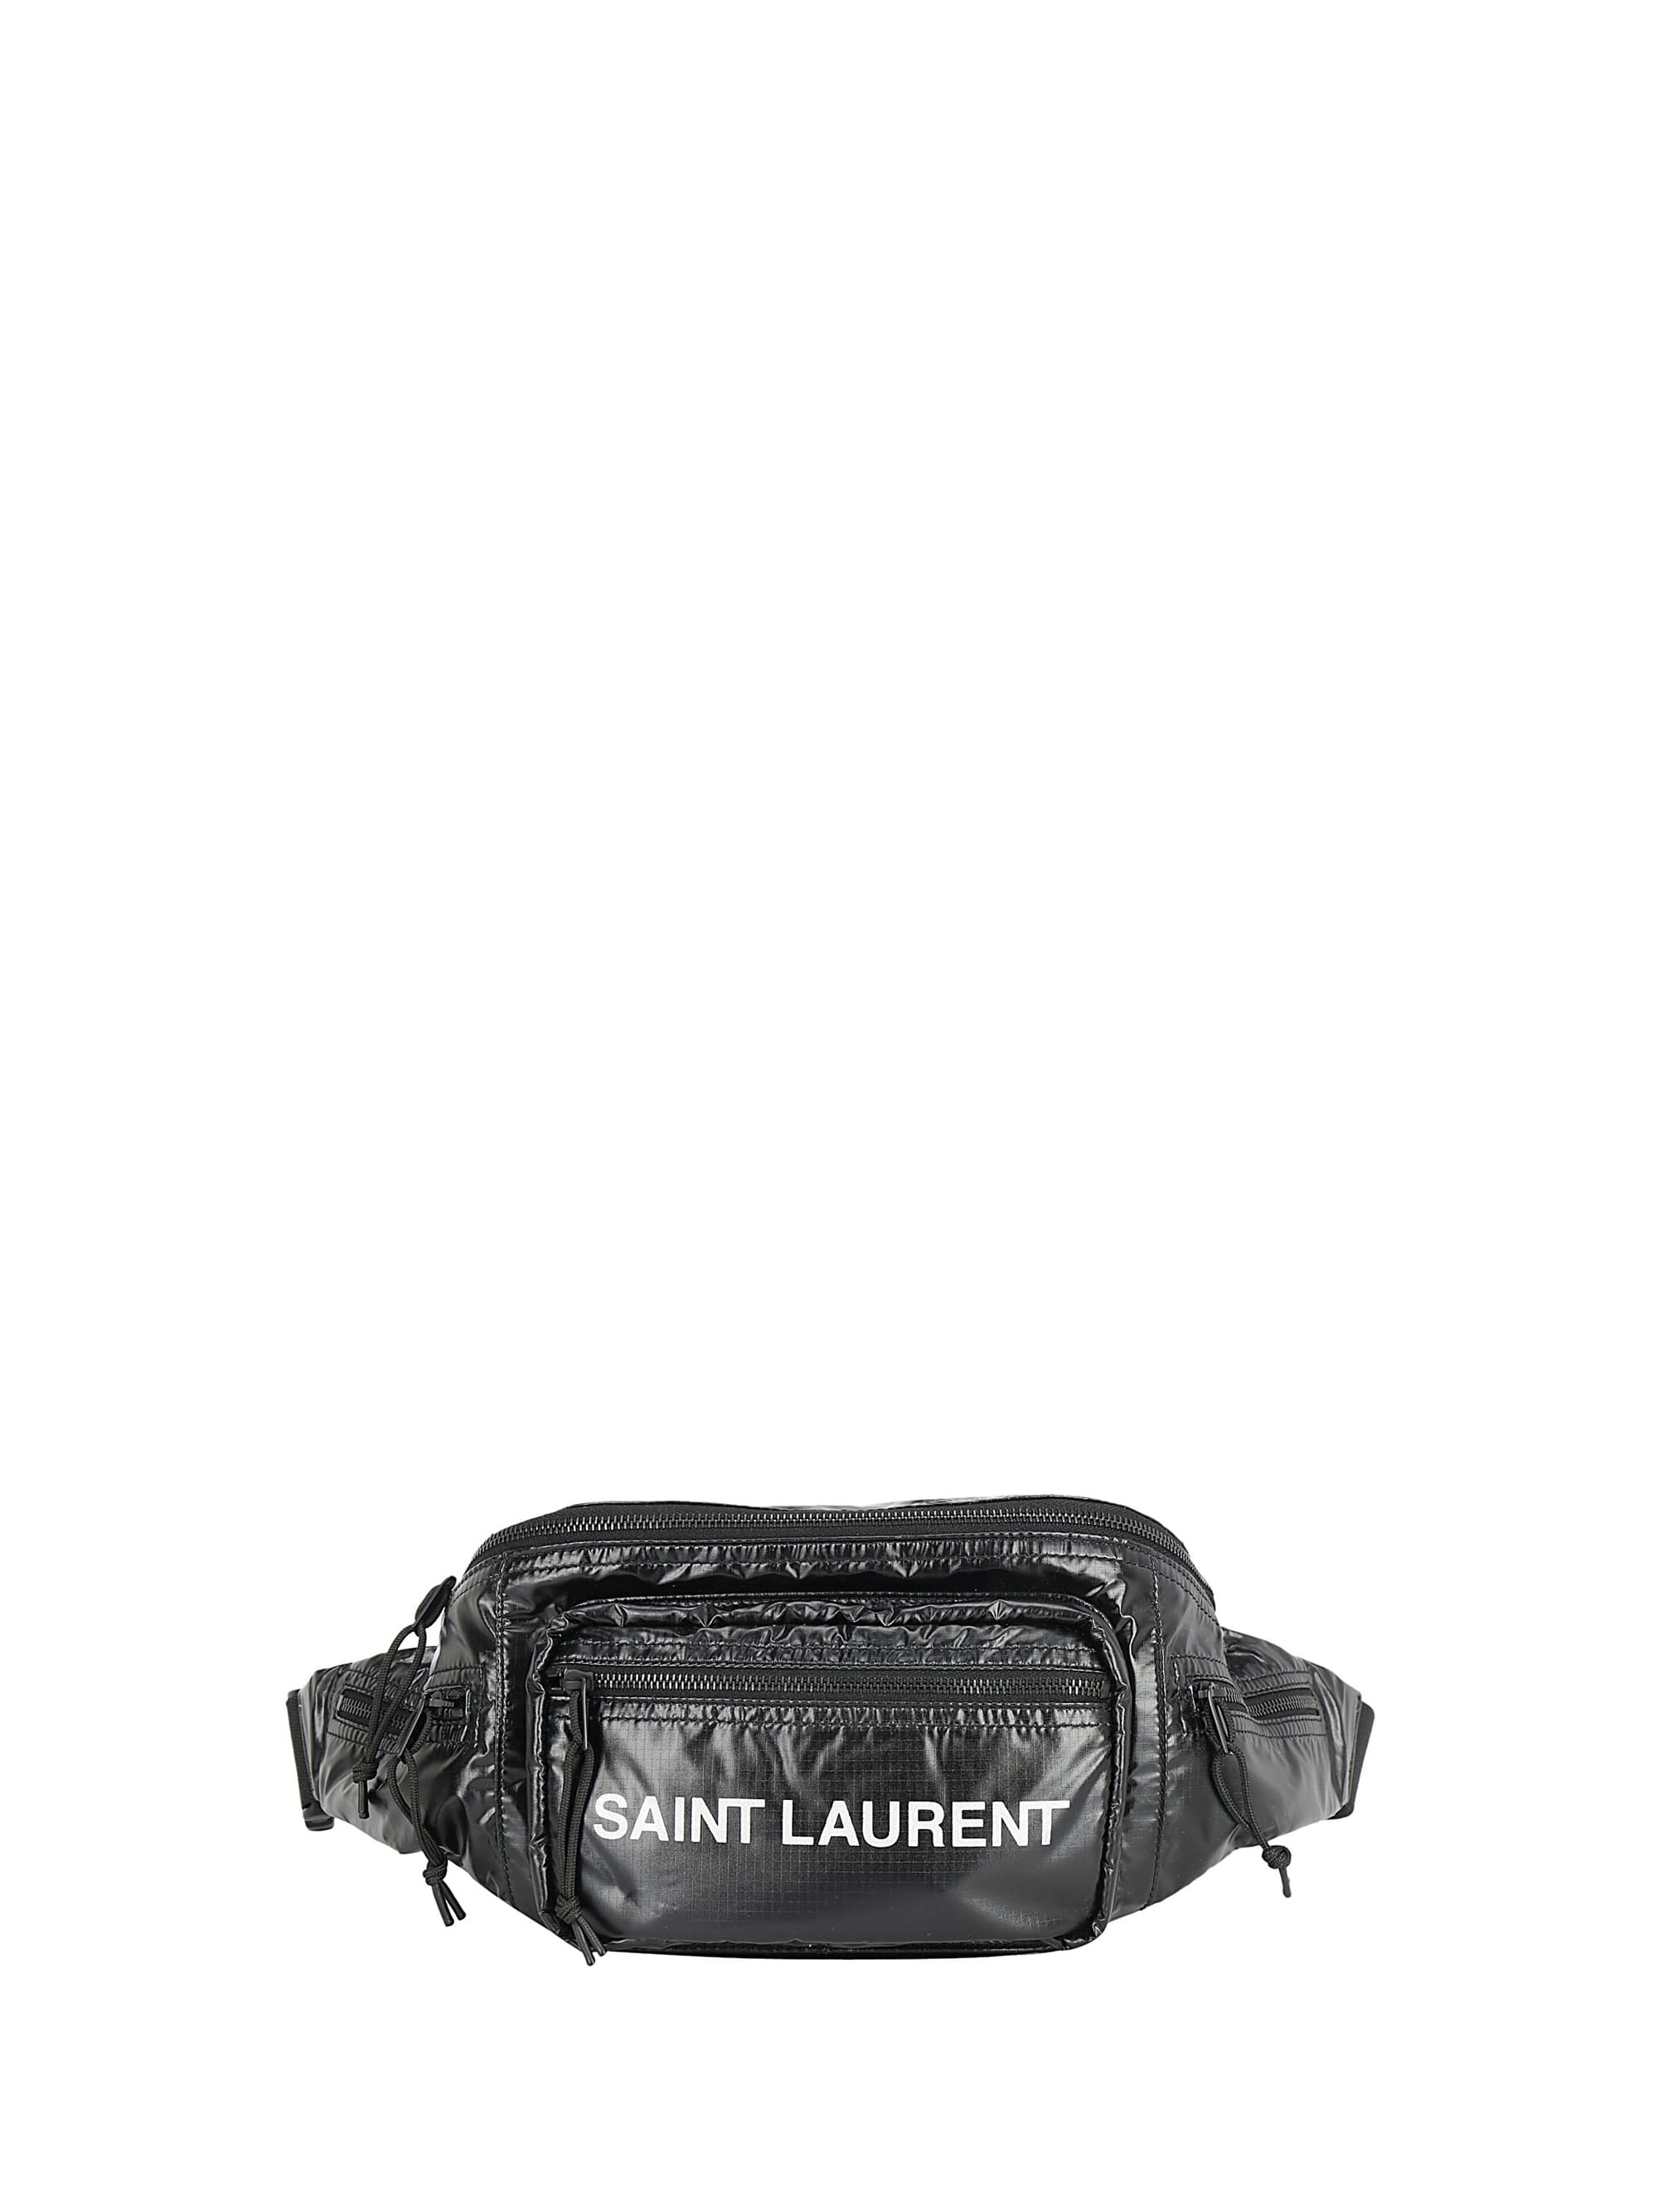 NEW ARRIVAL ! Avaliable on our Online Shop & Nişantaşı Store ✨Saint Laurent  Belt Bag ✨